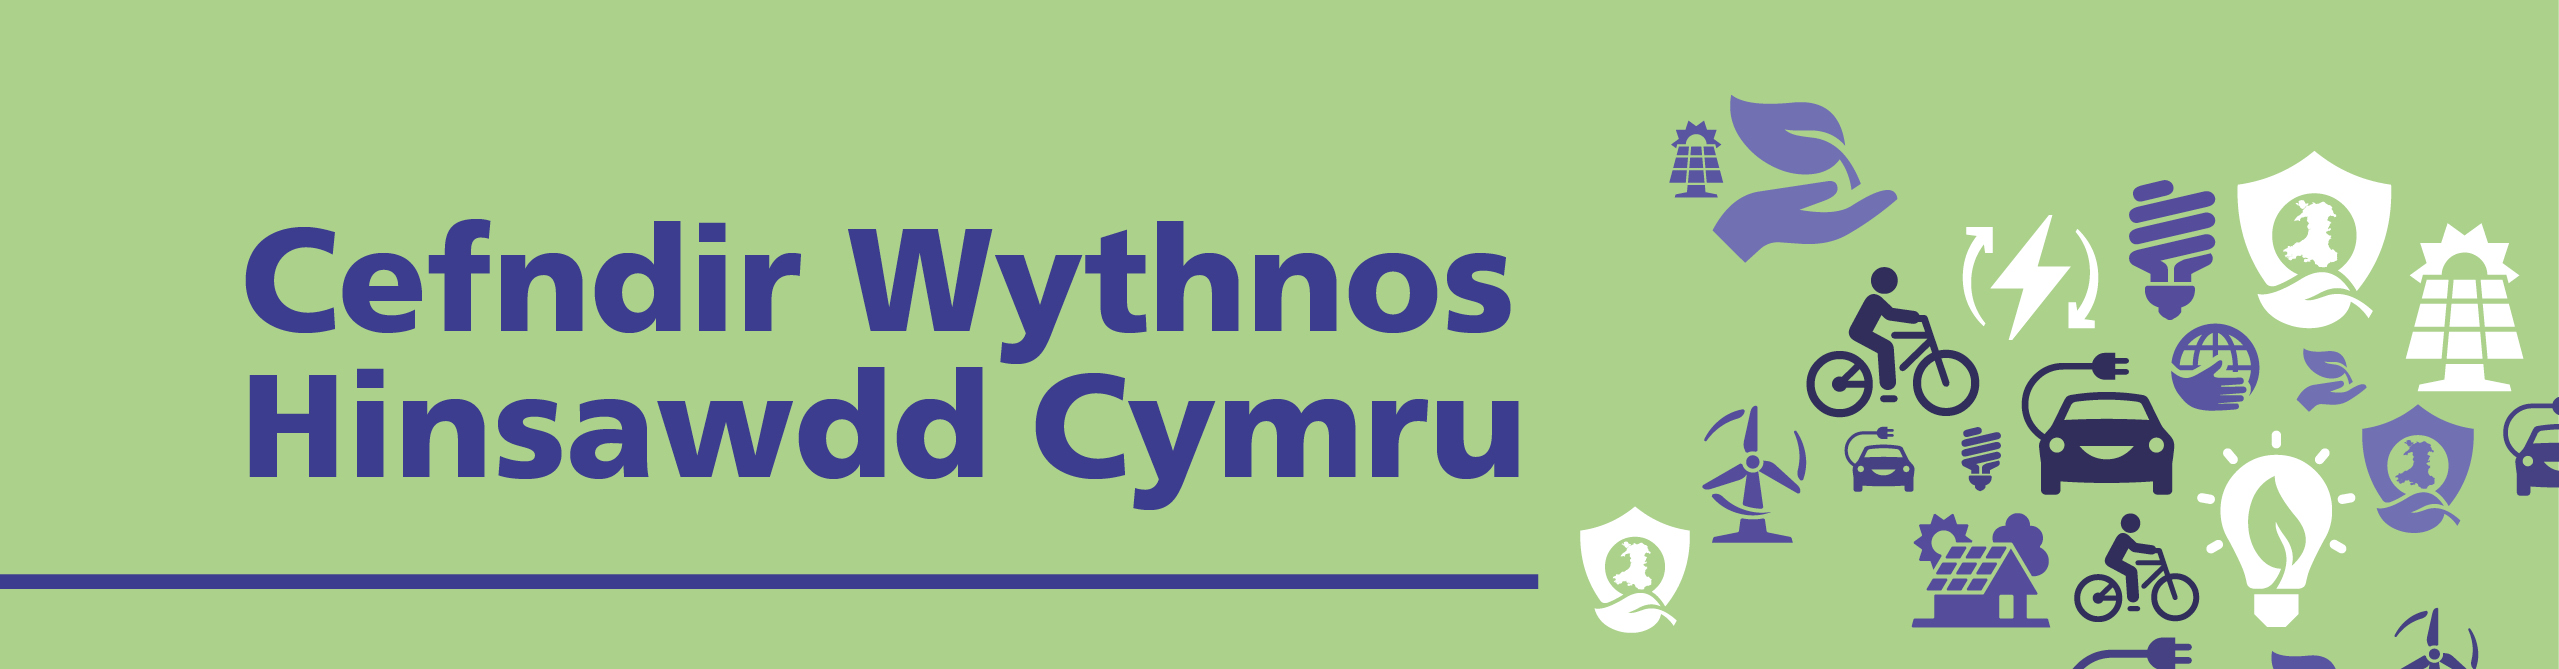 Wythnos Hinsawdd Cymru - Baner Ynghylch